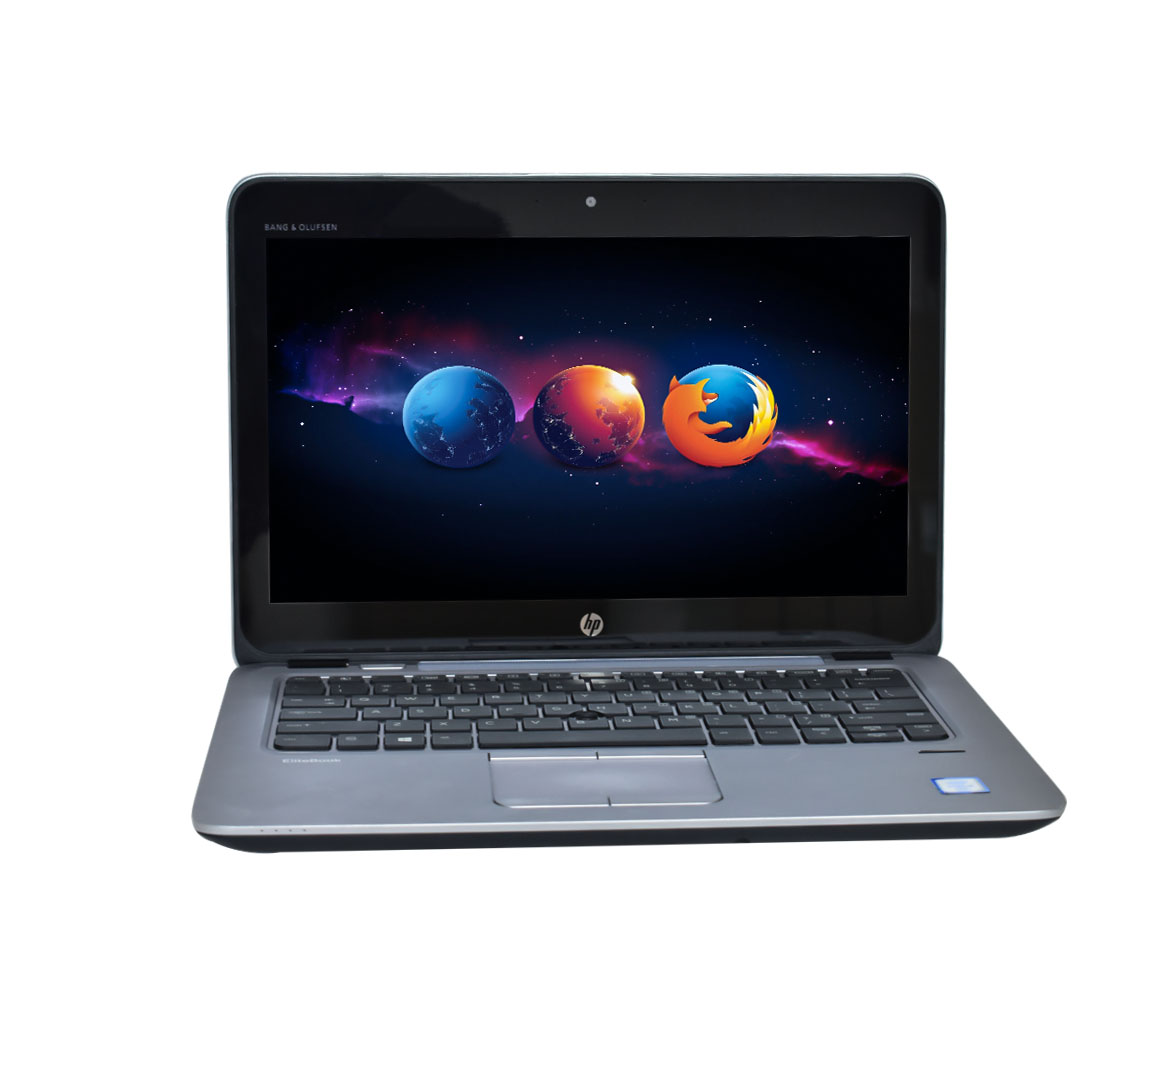 HP EliteBook 820 G3 Business Laptop Intel Core i7-6th Gen. CPU 8GB 